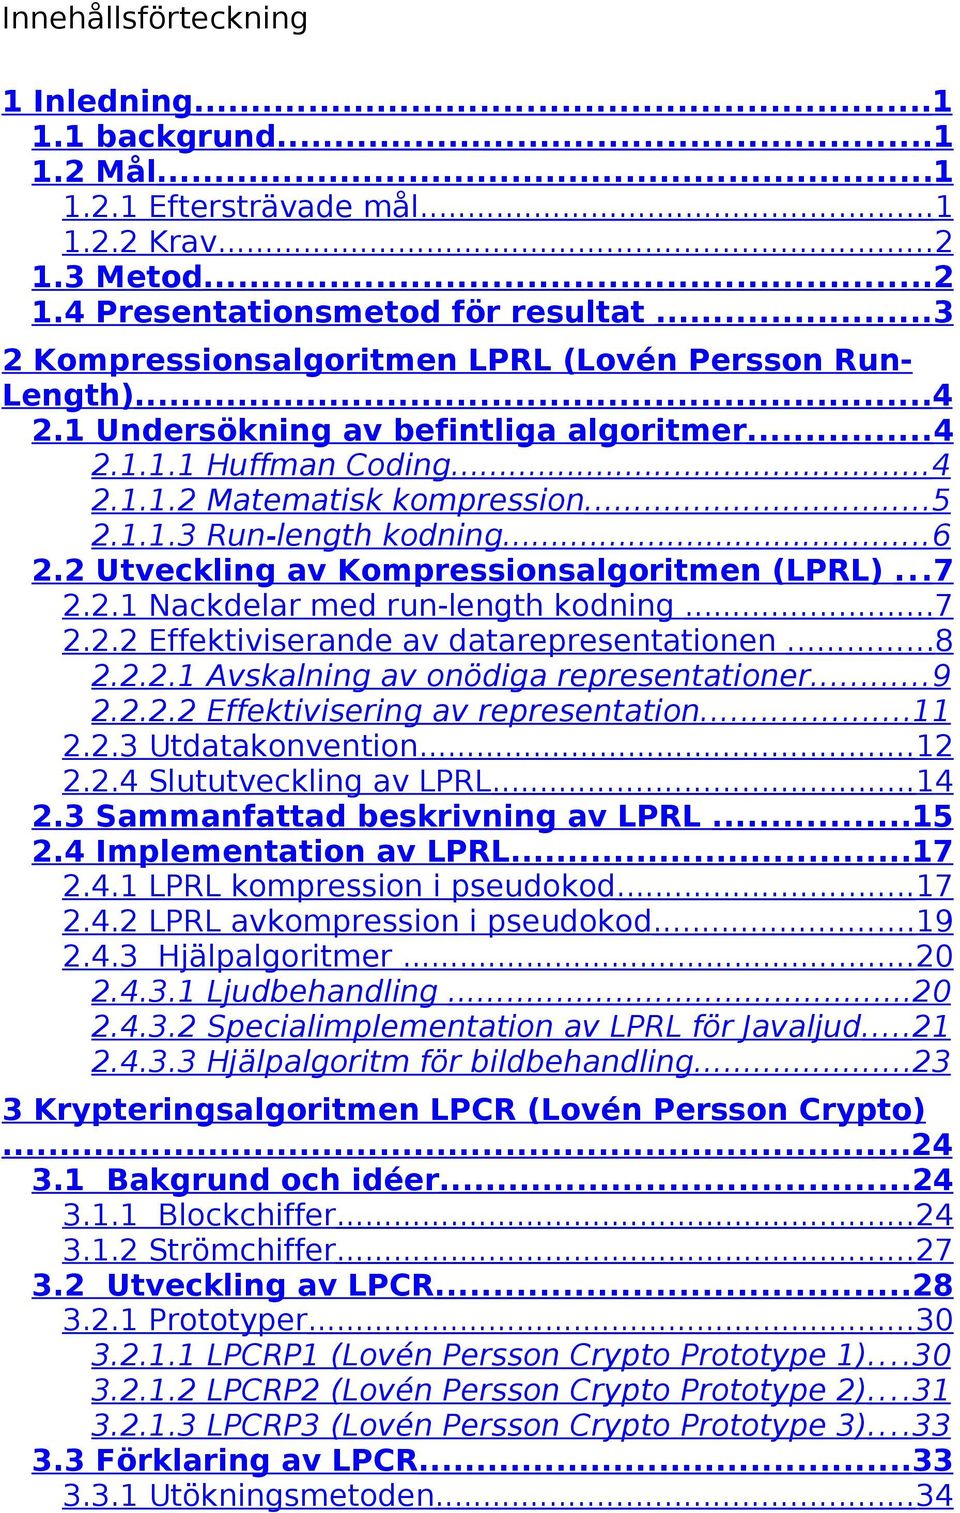 ..6 2.2 Utveckling av Kompressionsalgoritmen (LPRL)...7 2.2.1 Nackdelar med run-length kodning...7 2.2.2 Effektiviserande av datarepresentationen...8 2.2.2.1 Avskalning av onödiga representationer.